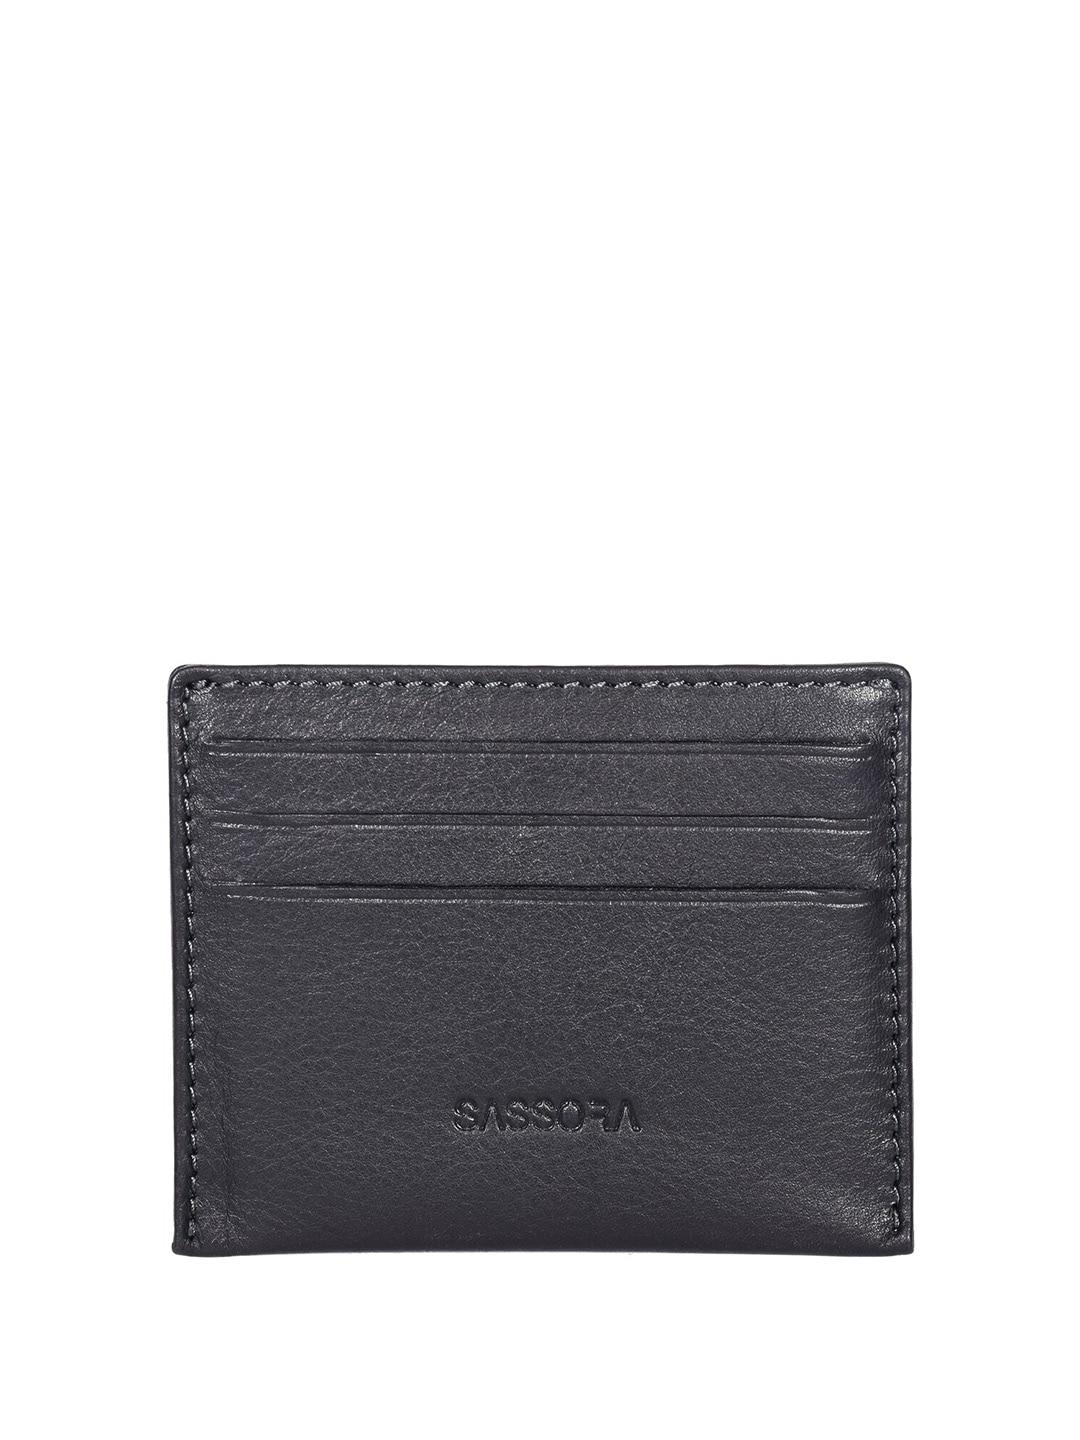 sassora-unisex-textured-leather-rfid-protected-card-holder